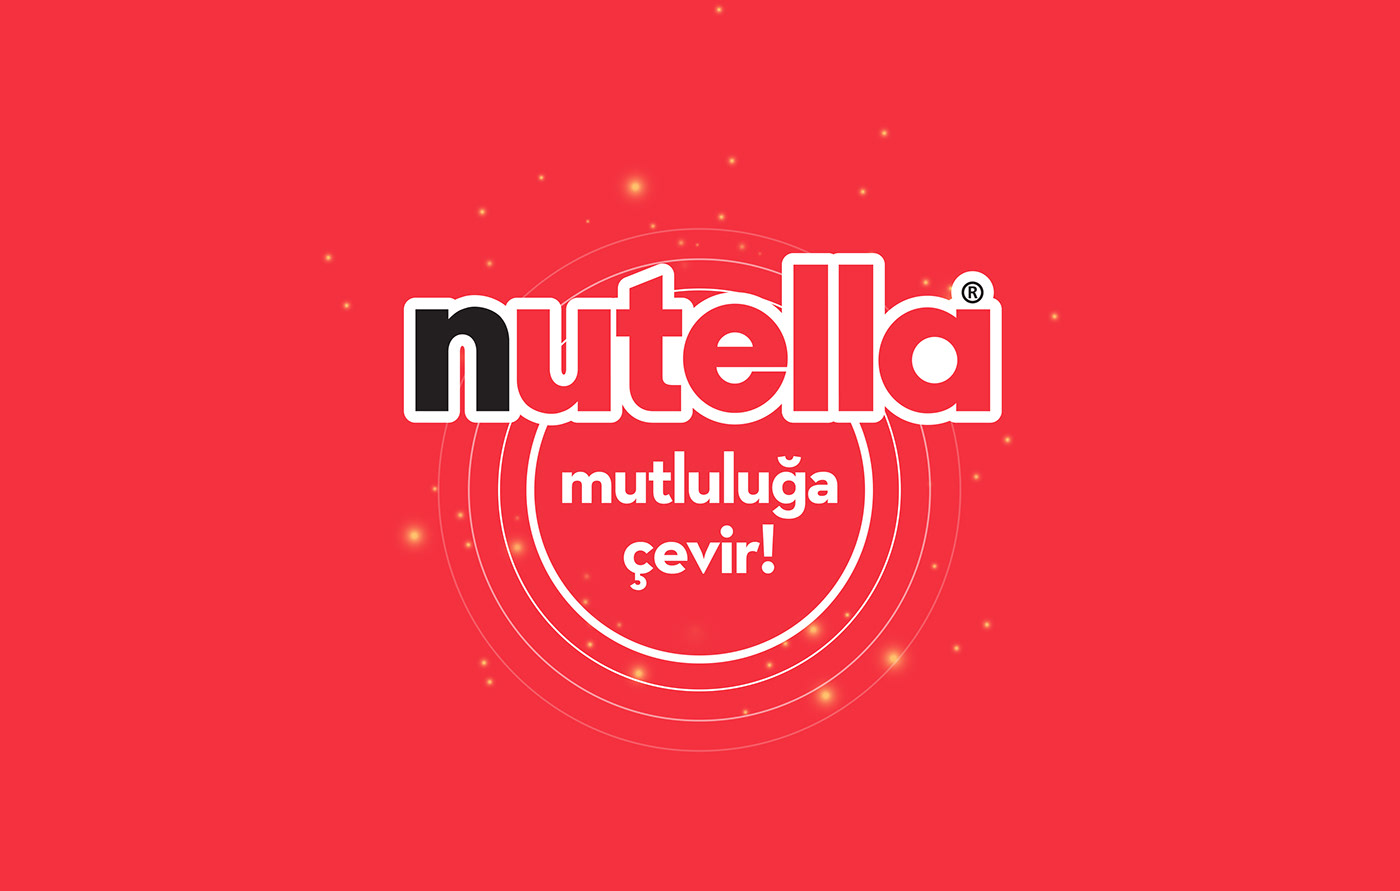 ferrero gift iphone nutella Advertising  nutella cark promo